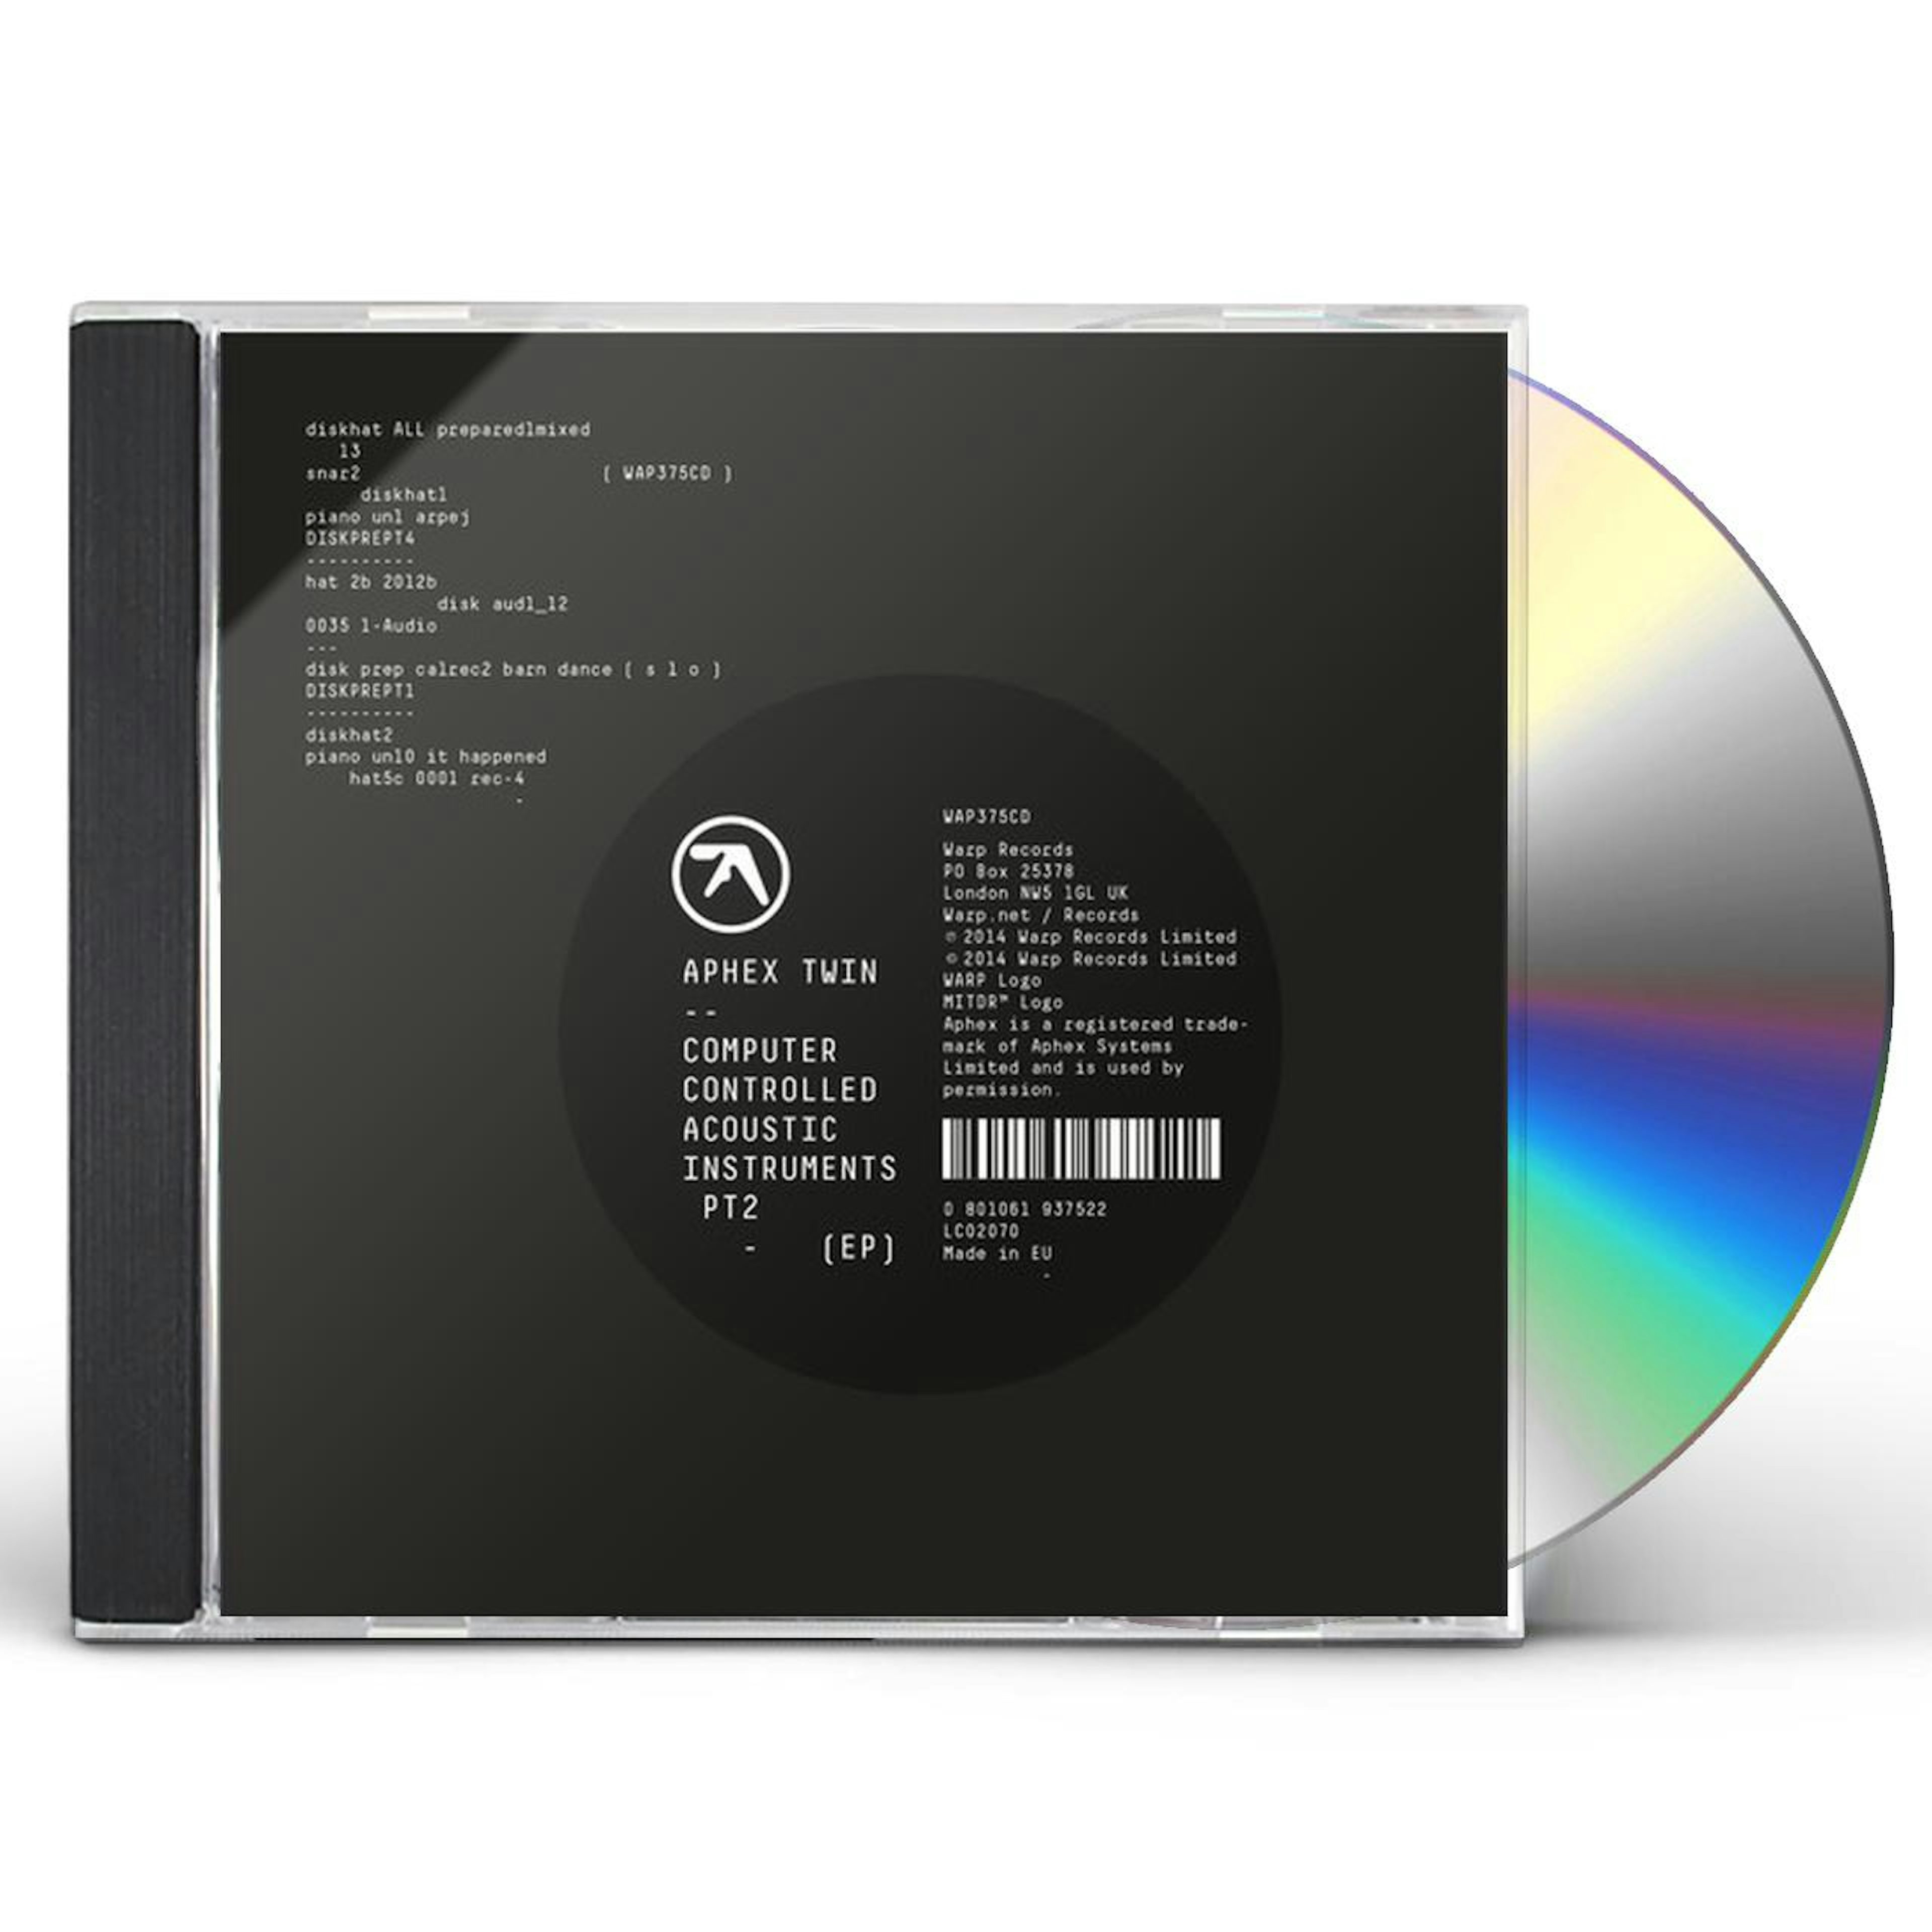 Assimilatie sensatie puur Aphex Twin COMPUTER CONTROLLED ACOUSTIC INSTRUMENTS PT 2 CD